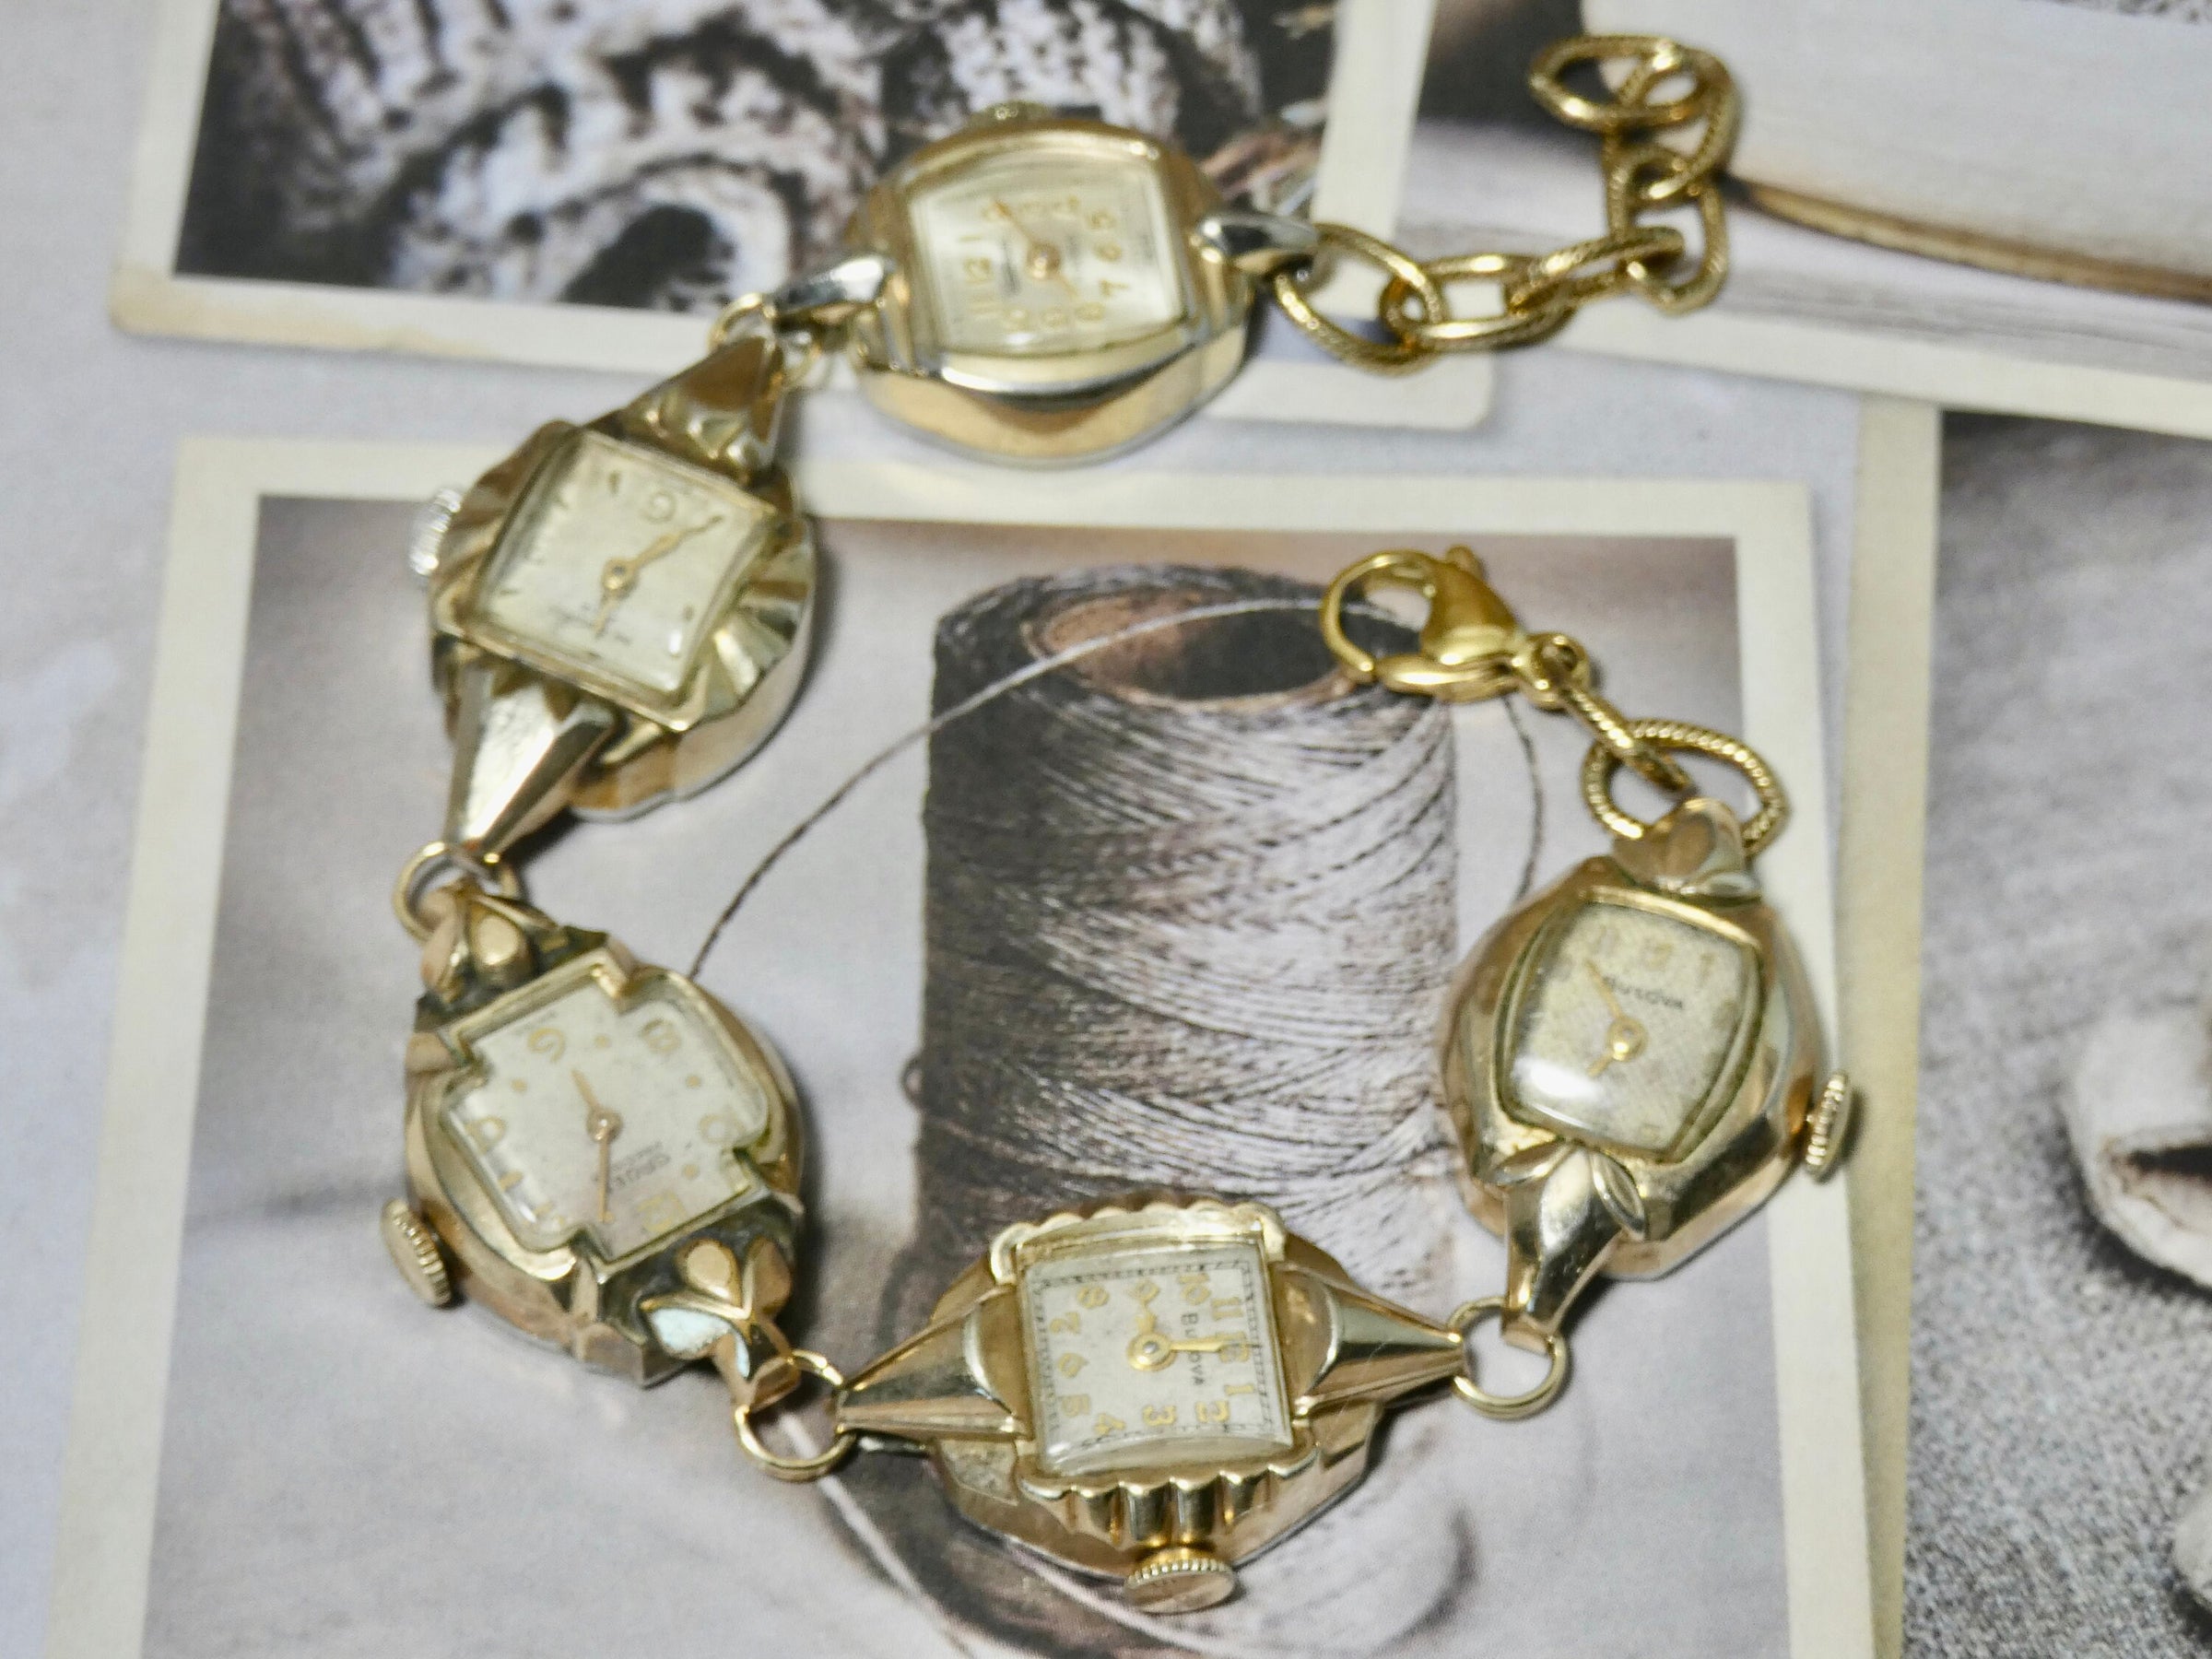 Vintage Watch Bracelet, One of a Kind Bracelet, All Gold plated Watch Bracelet- LBB